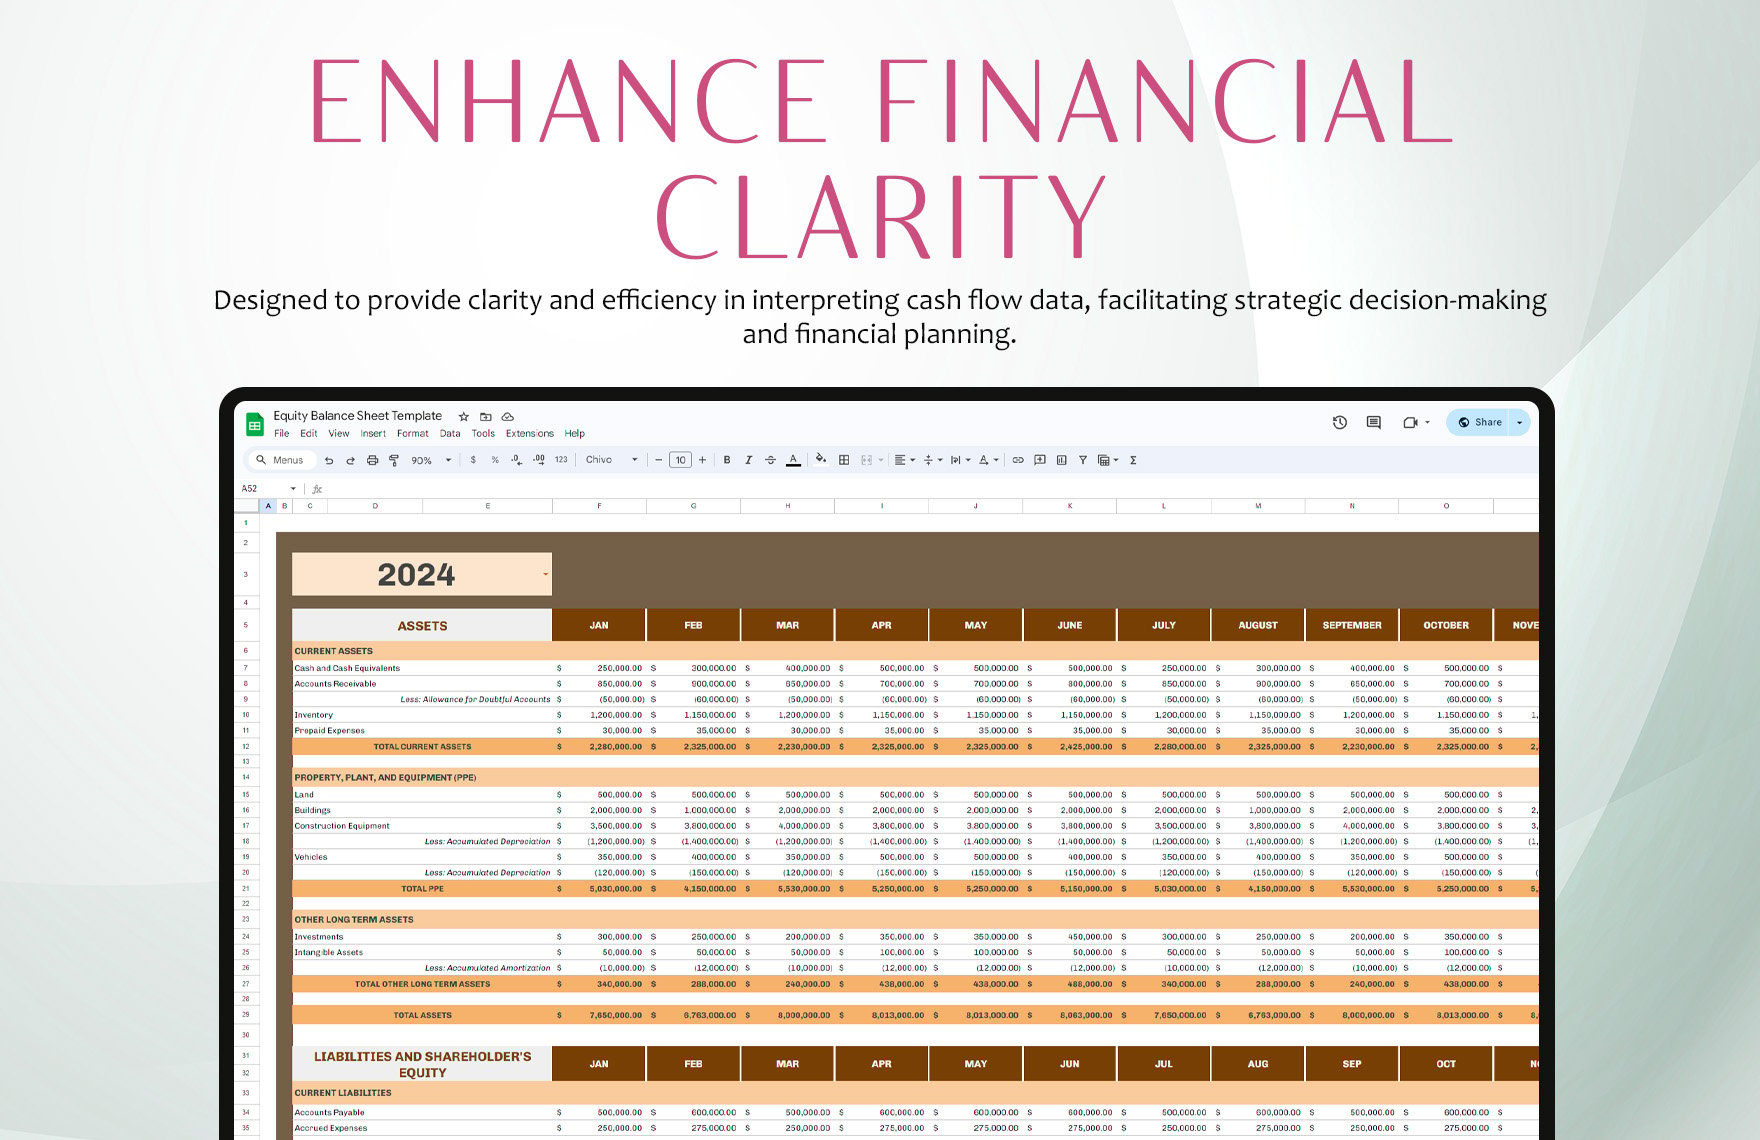 Equity Balance Sheet Template